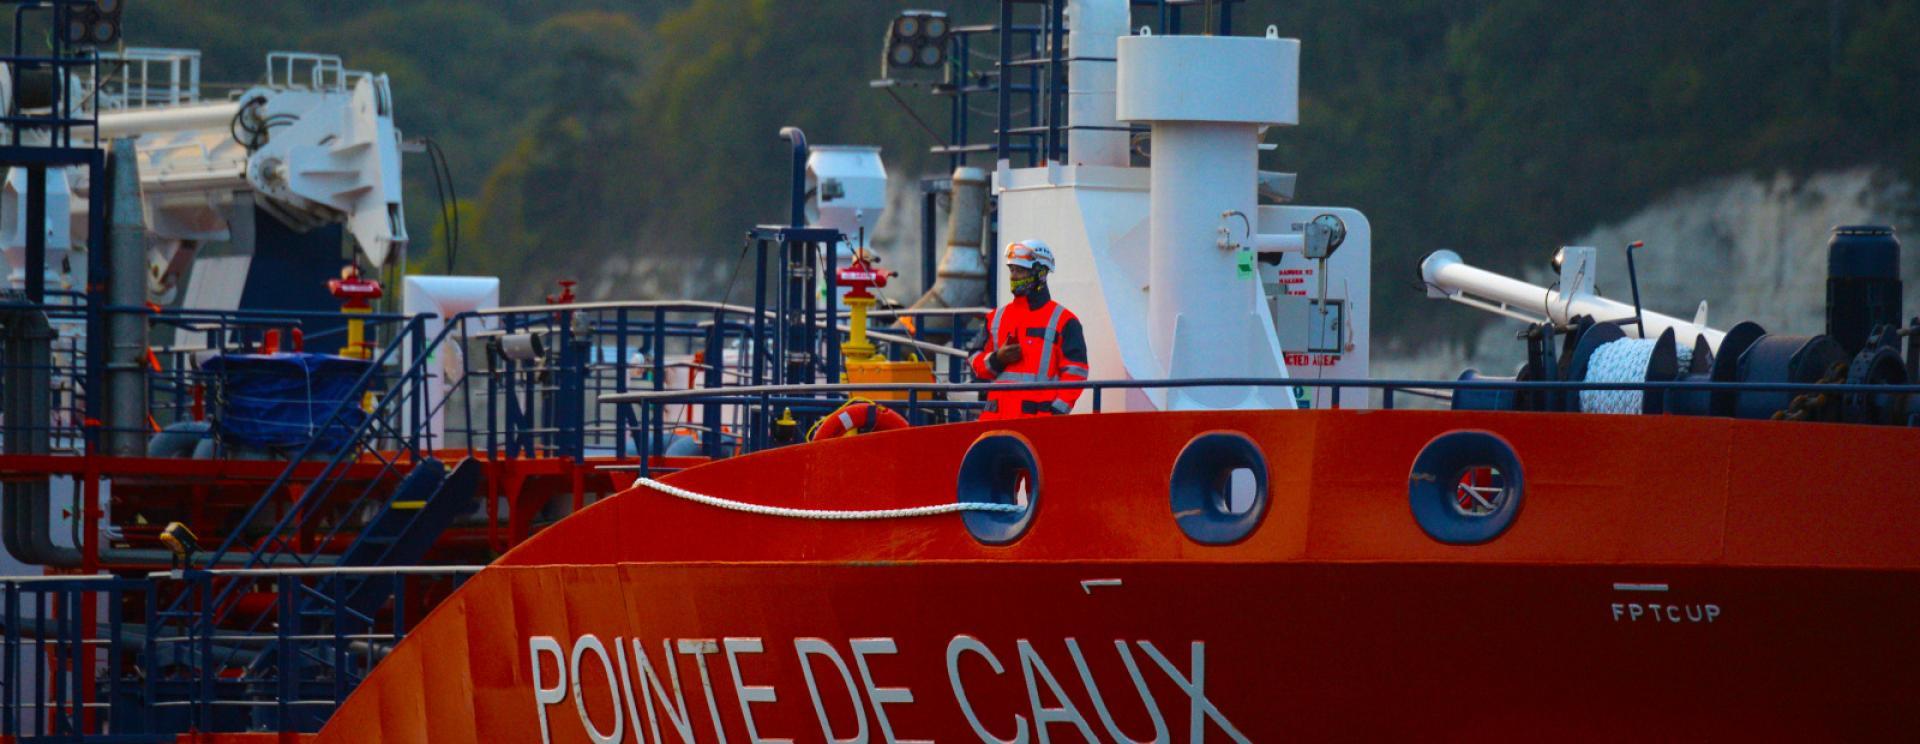 Escale inaugurale du Pointe de Caux, nouveau pétrolier de l'armement havrais Sogestran Shipping le long du canal de Tancarville